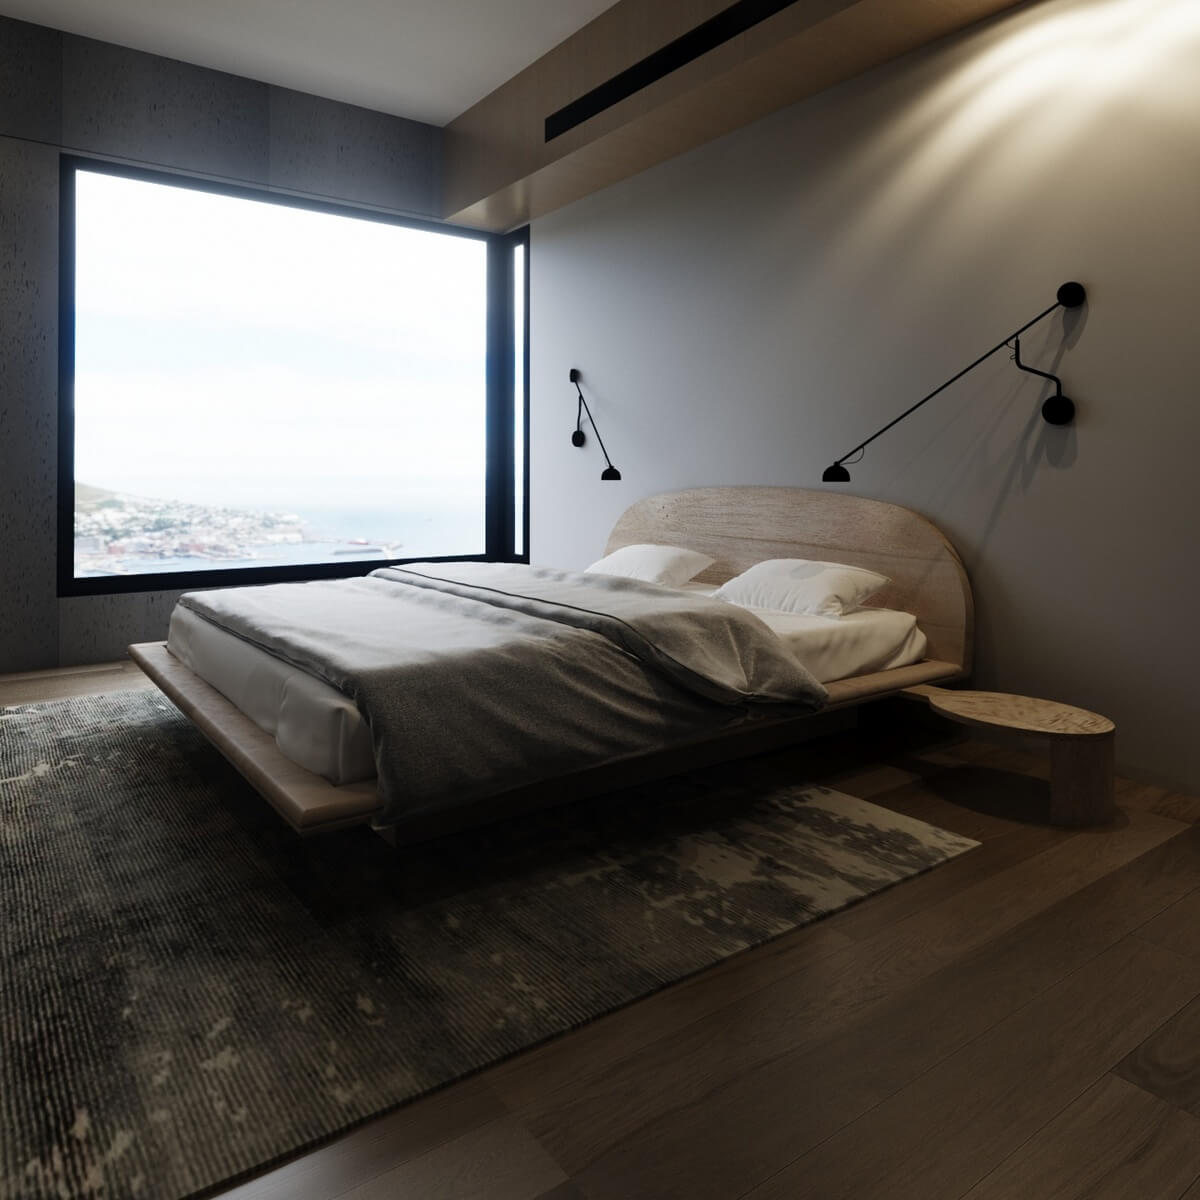 Łóżko drewniane Space